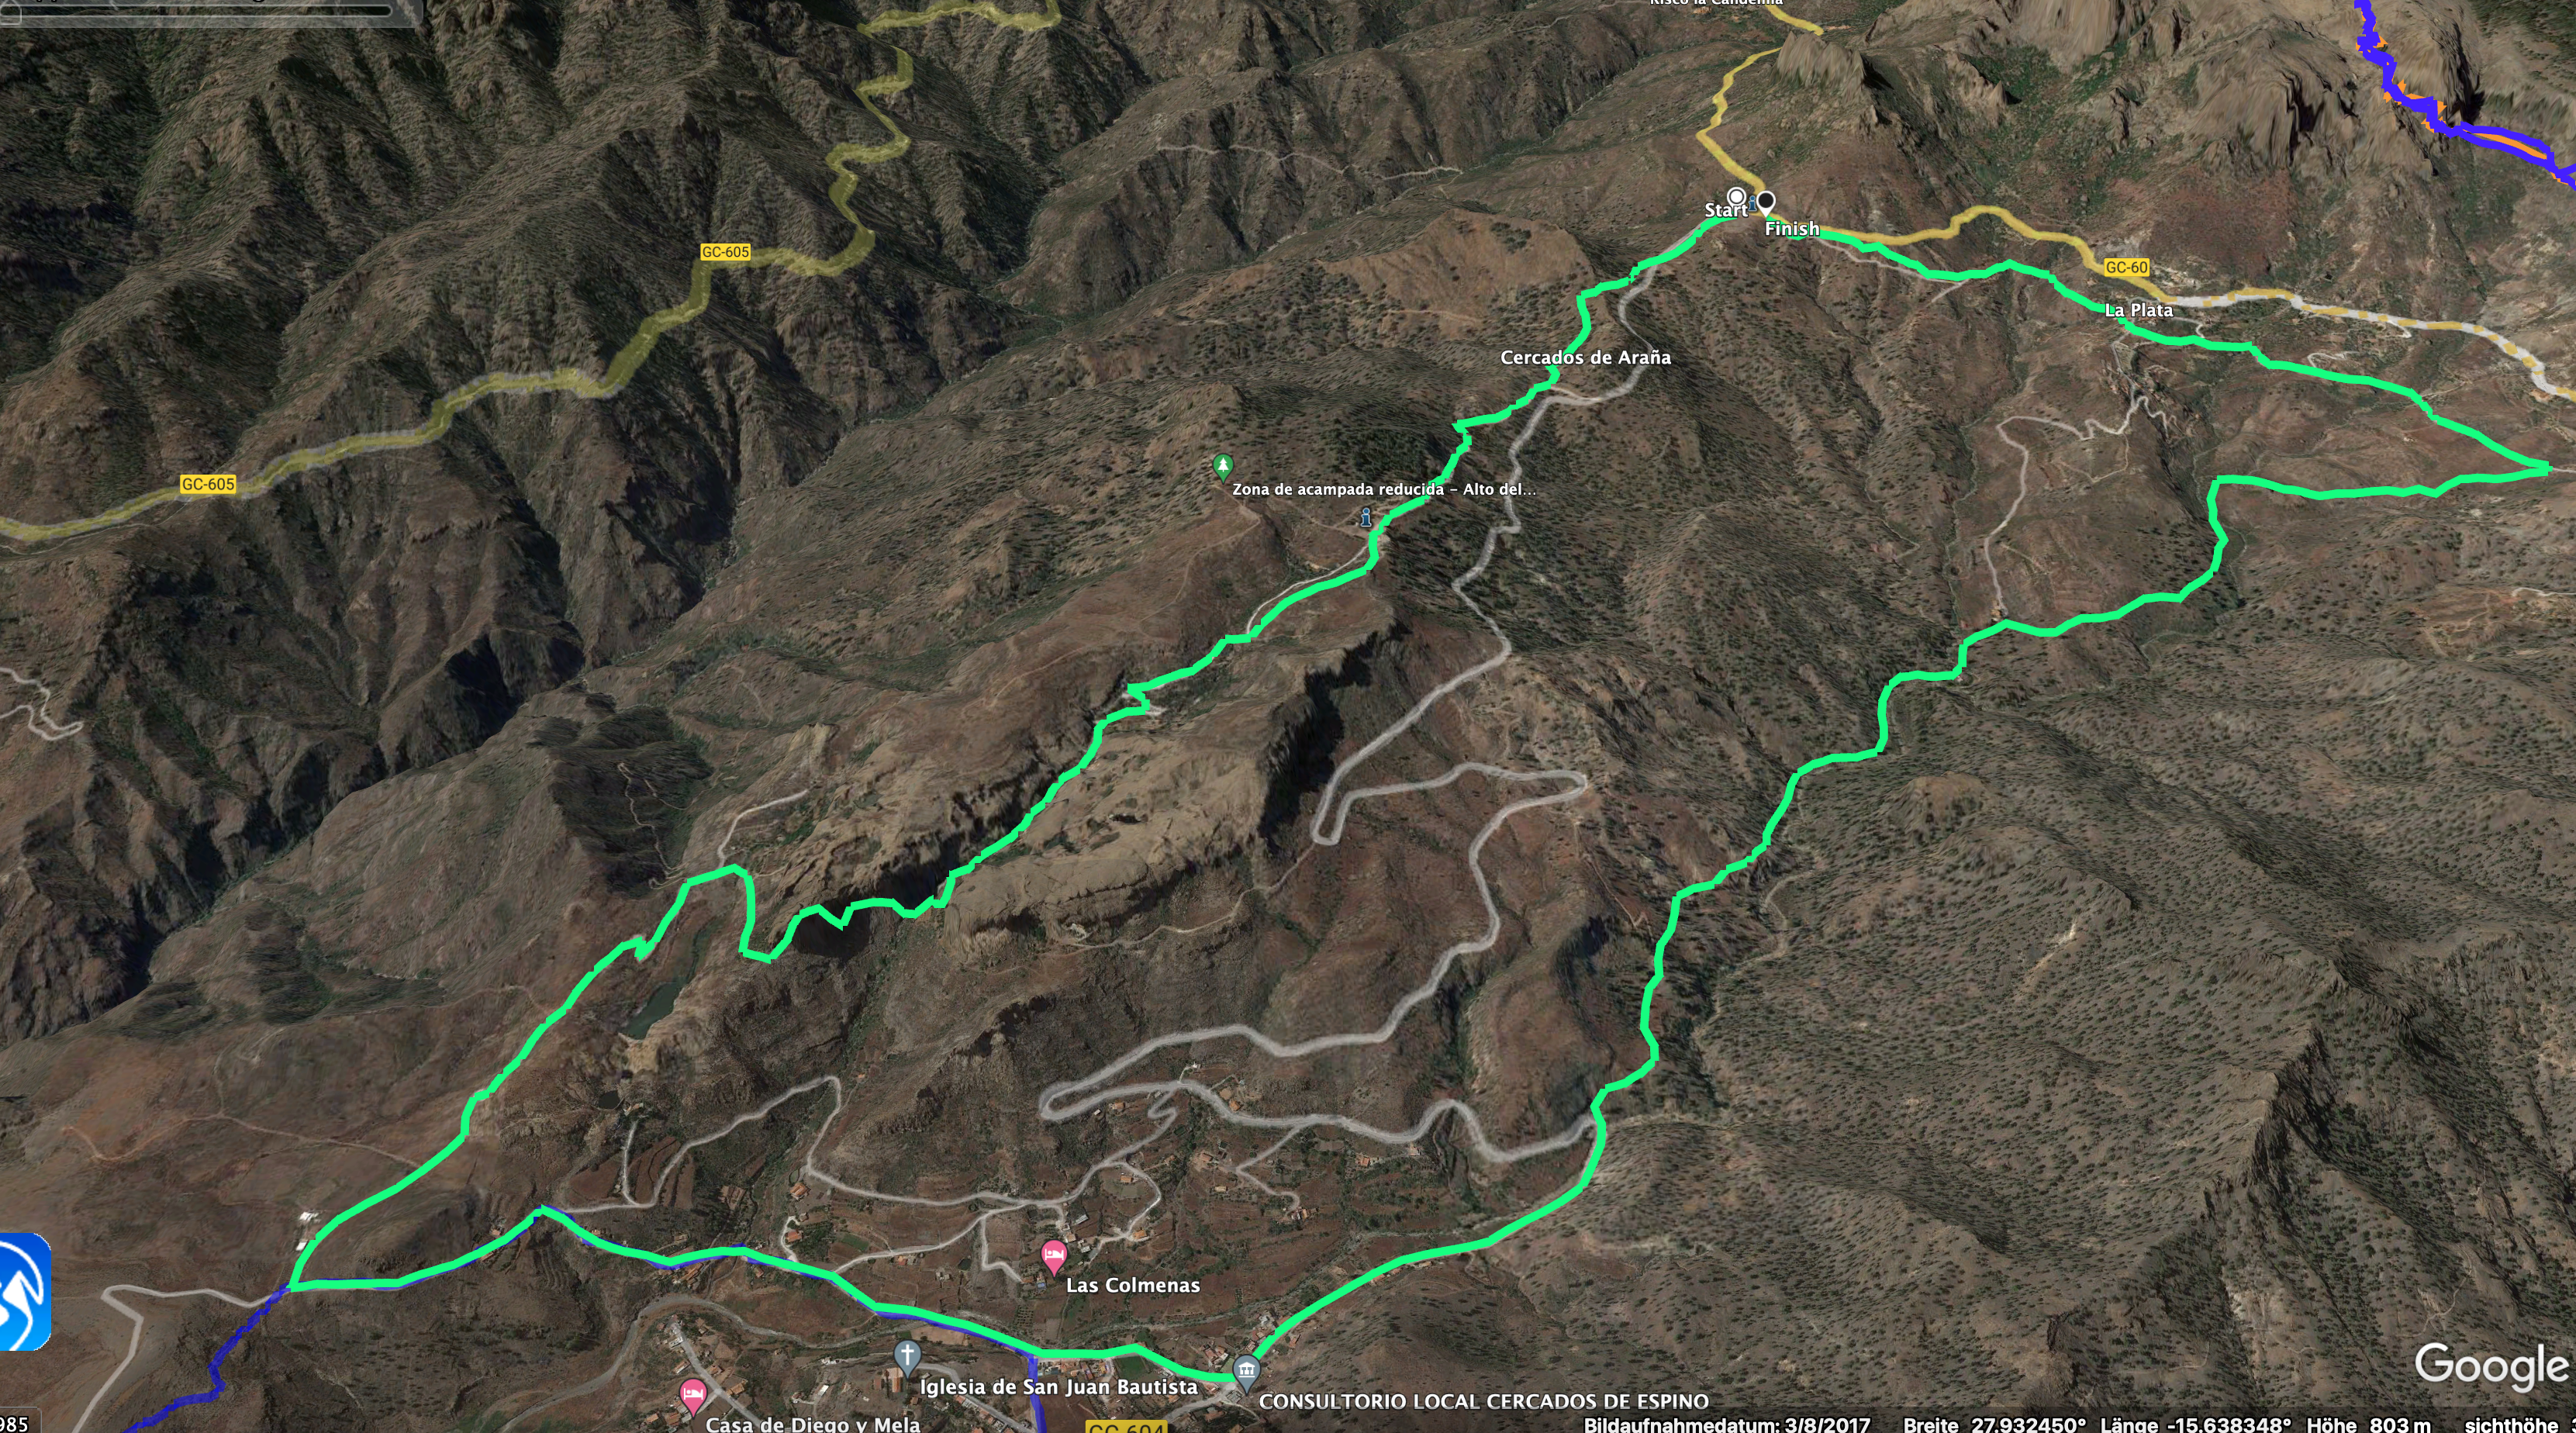 Track of the Cercados de Araña hike